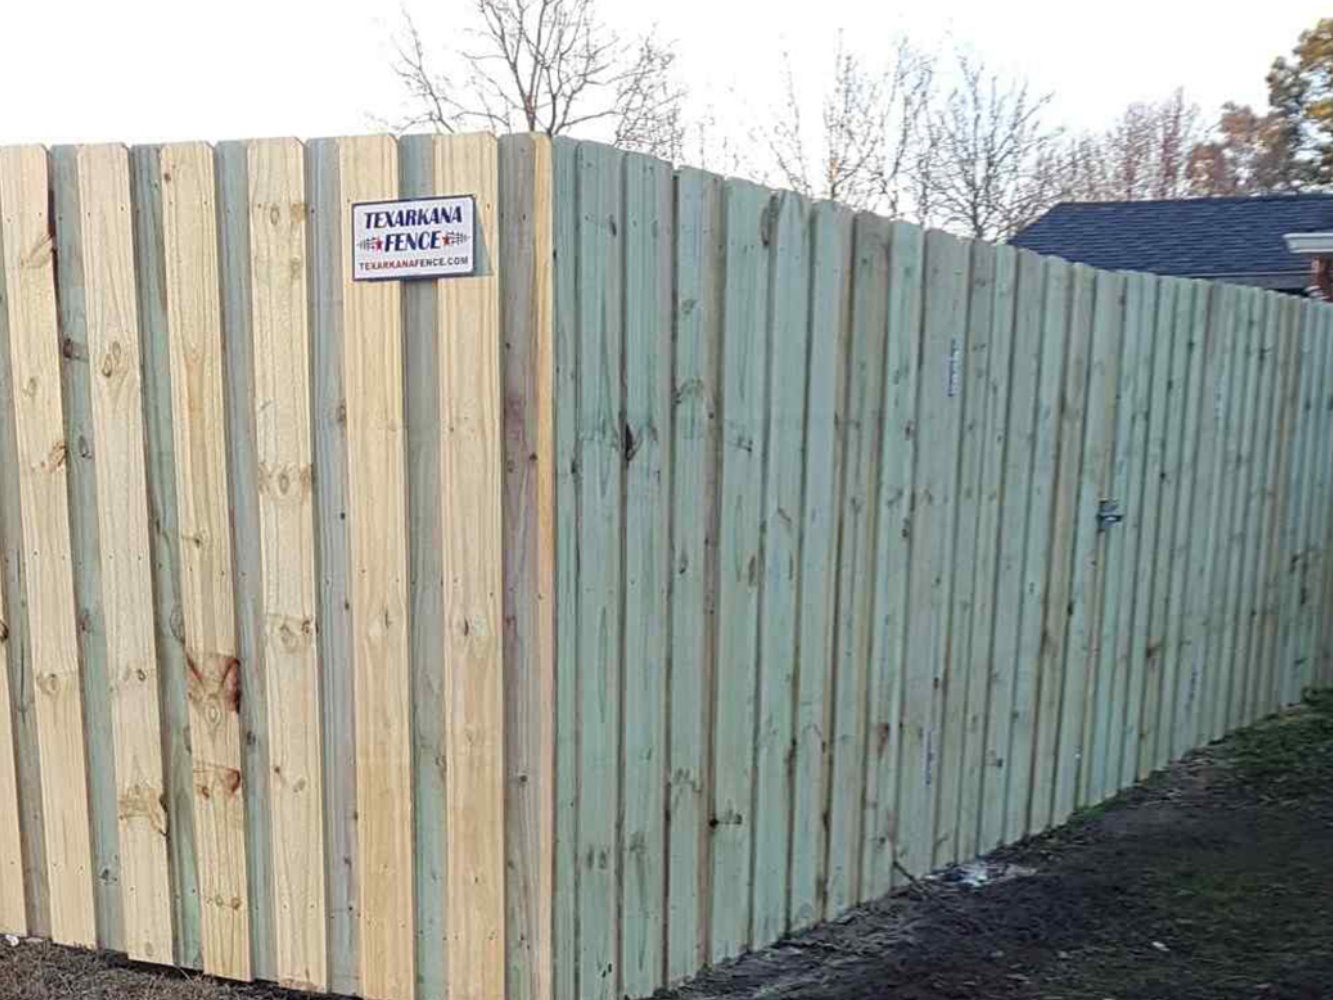 Hope AR Shadowbox style wood fence